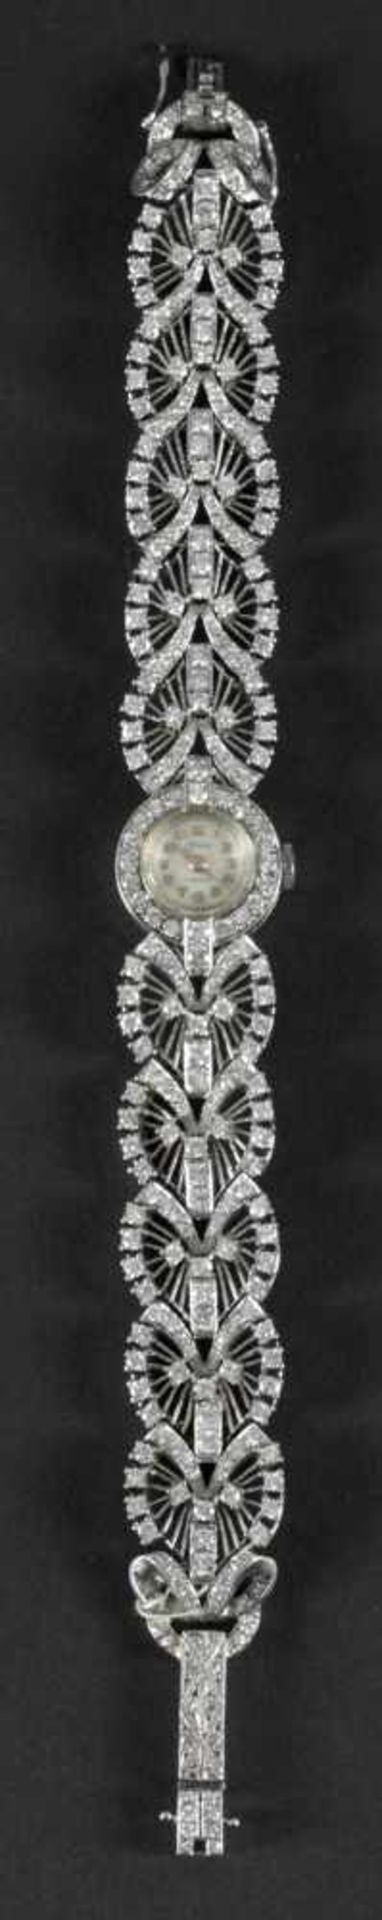 Damen-Armbanduhr "Onsa", 750er WG, besetzt mit 272 Diamanten (Brillant, Sechzehnkant) von zus. 9,4